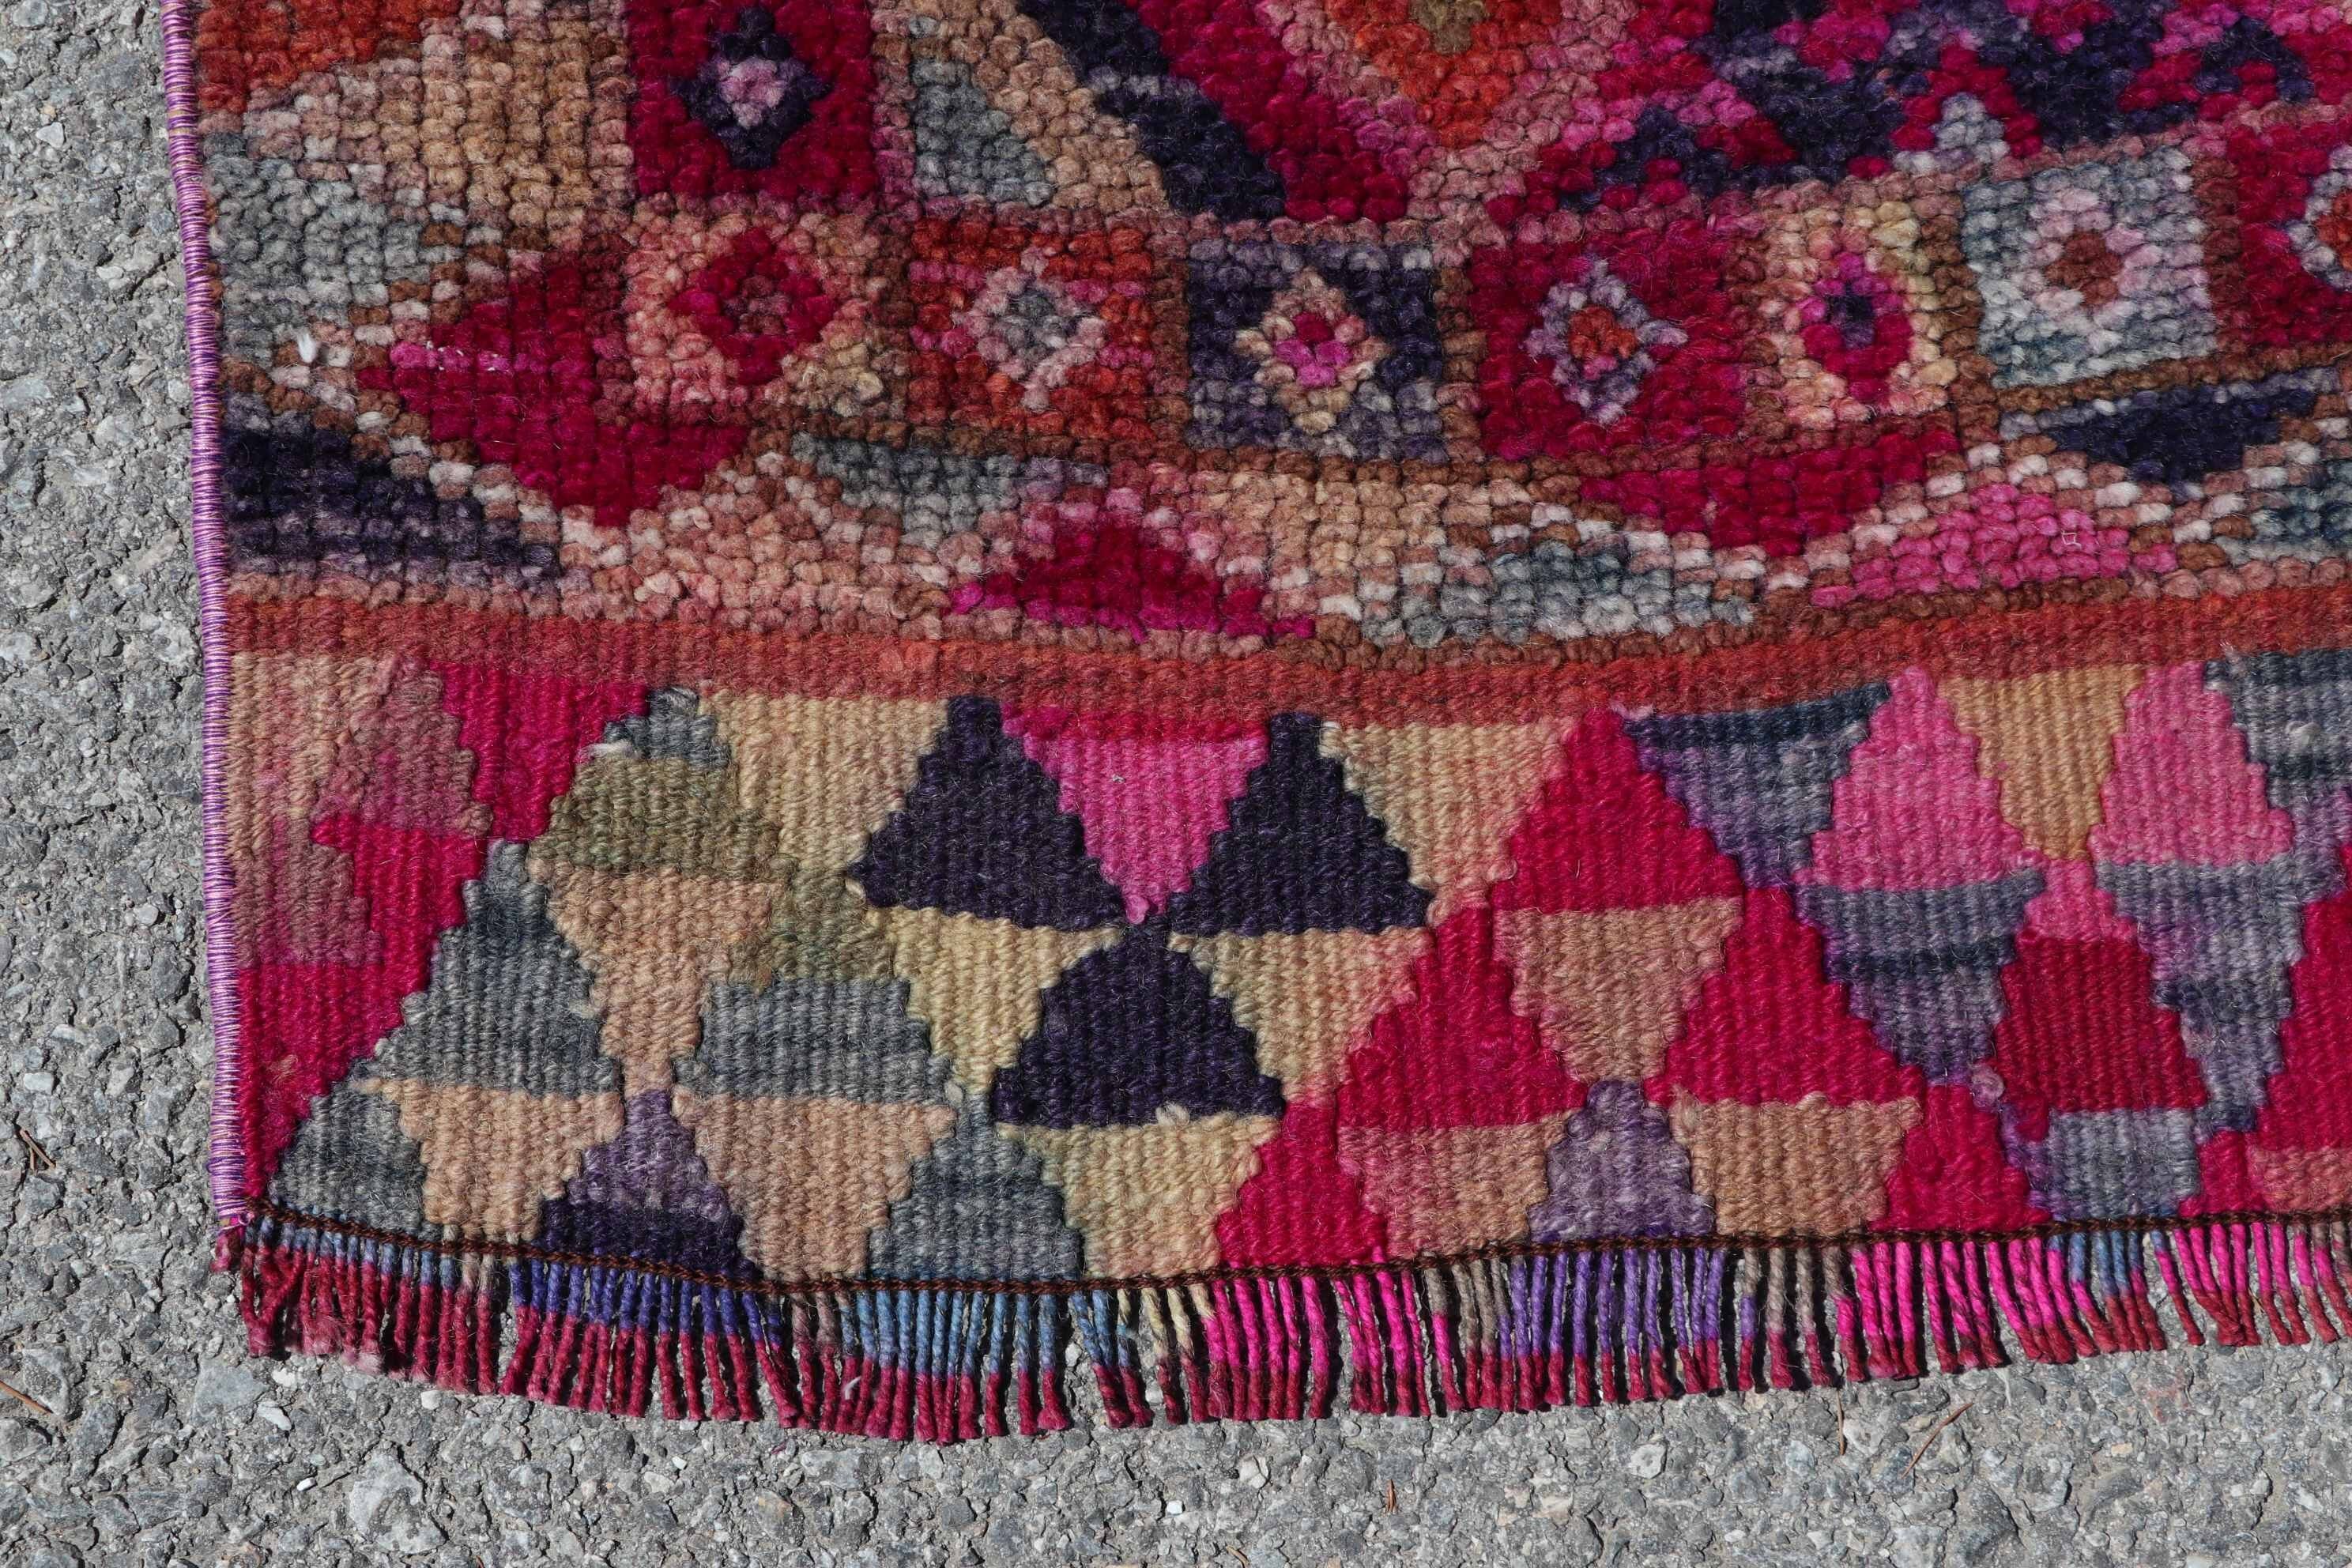 Vintage Rug, Turkish Rug, Rugs for Runner, 2.9x10.1 ft Runner Rugs, Bohemian Rug, Stair Rugs, Pink Floor Rug, Anatolian Rug, Cool Rug